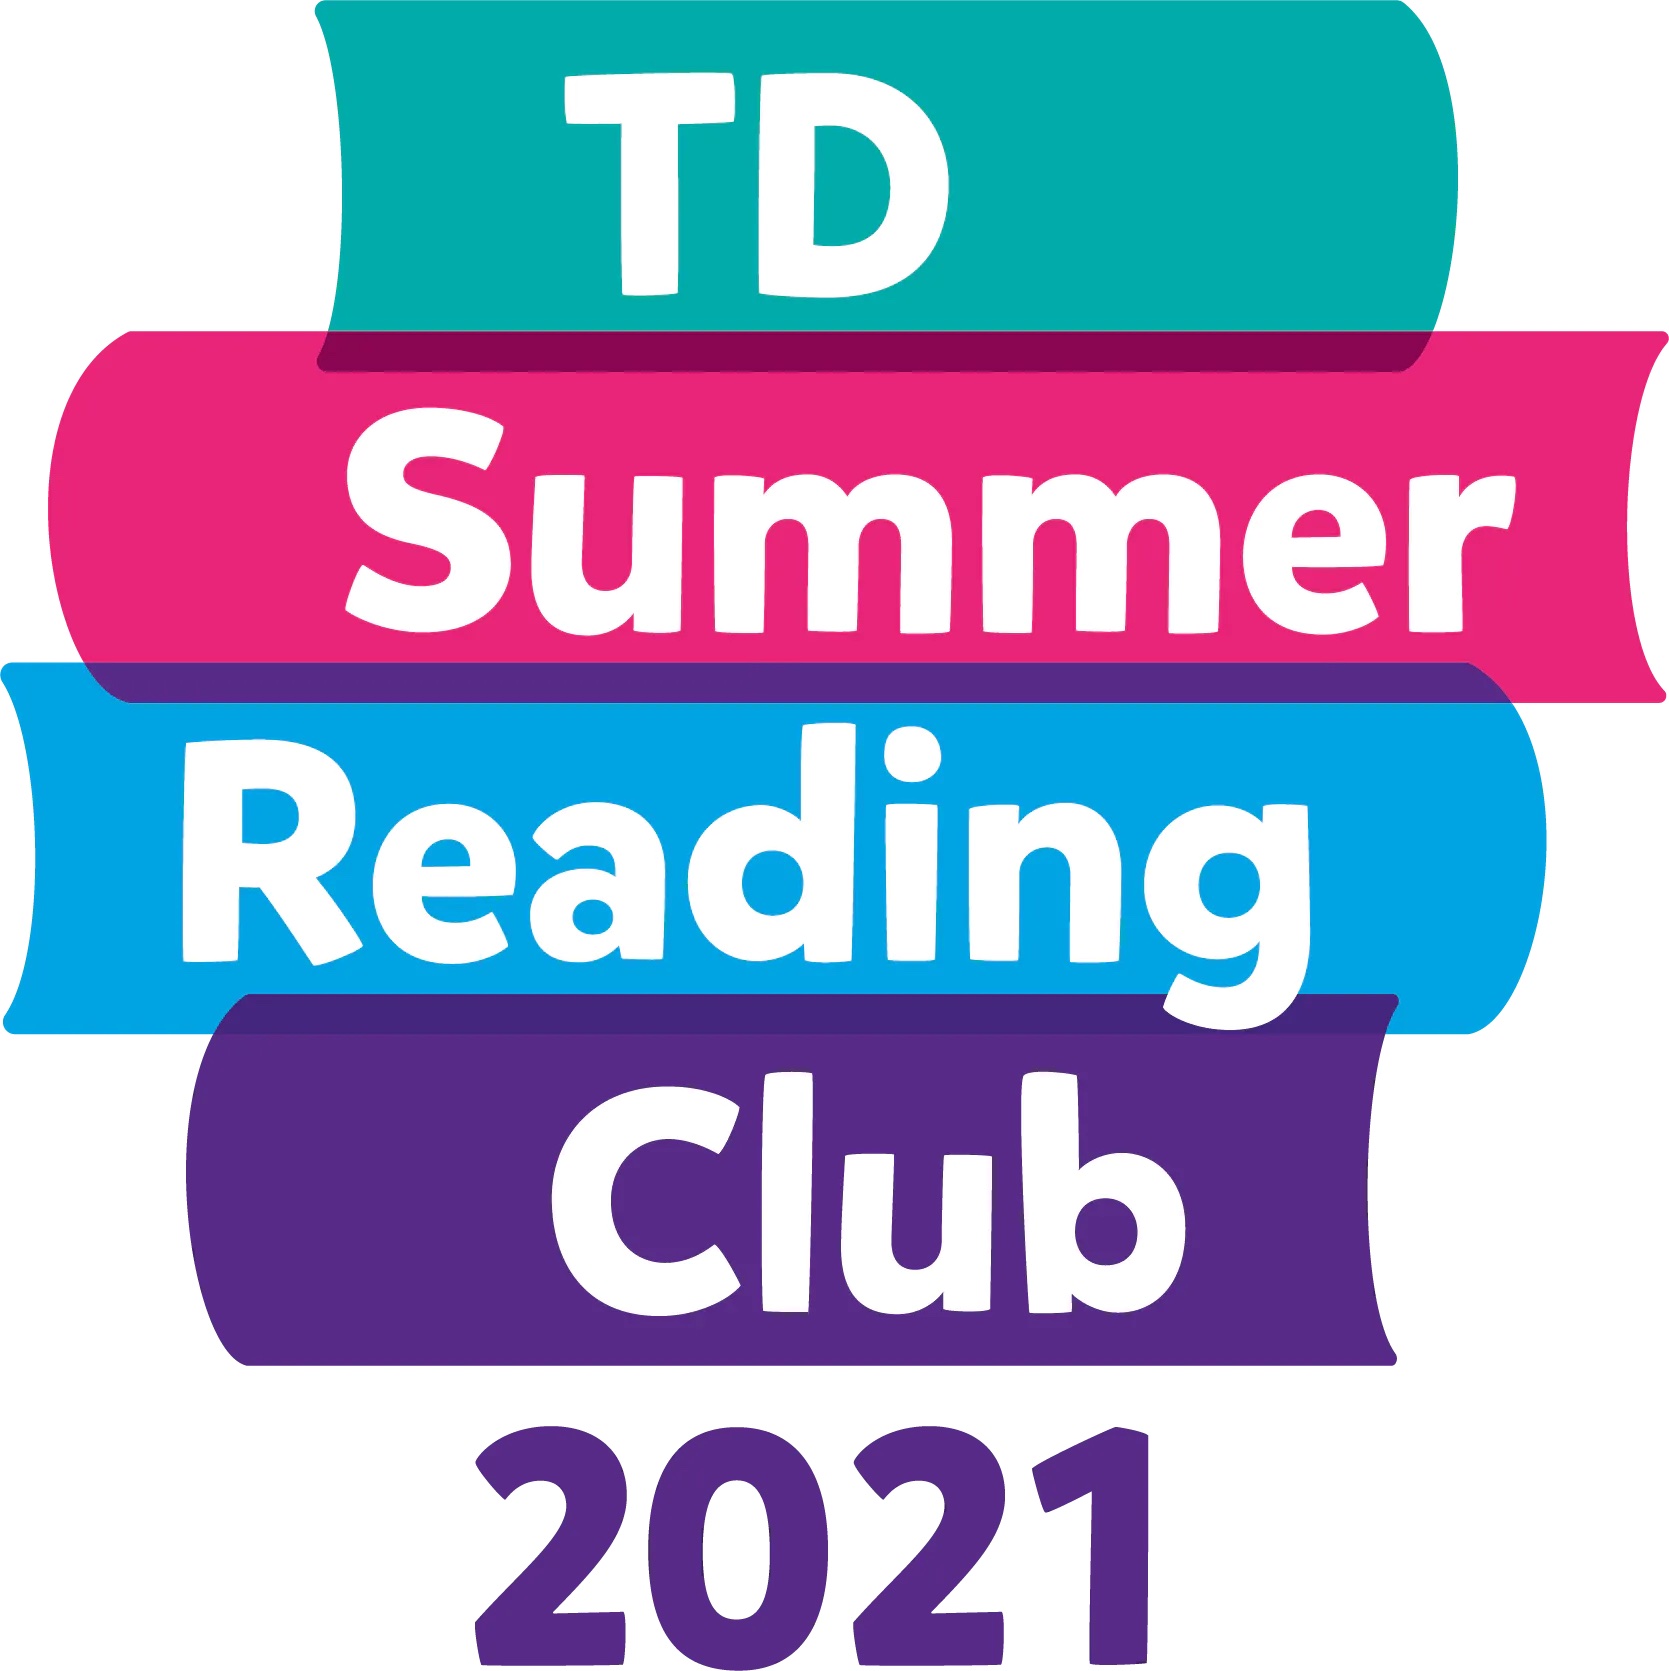 TD Summer Reading Club! West Grey Public Library